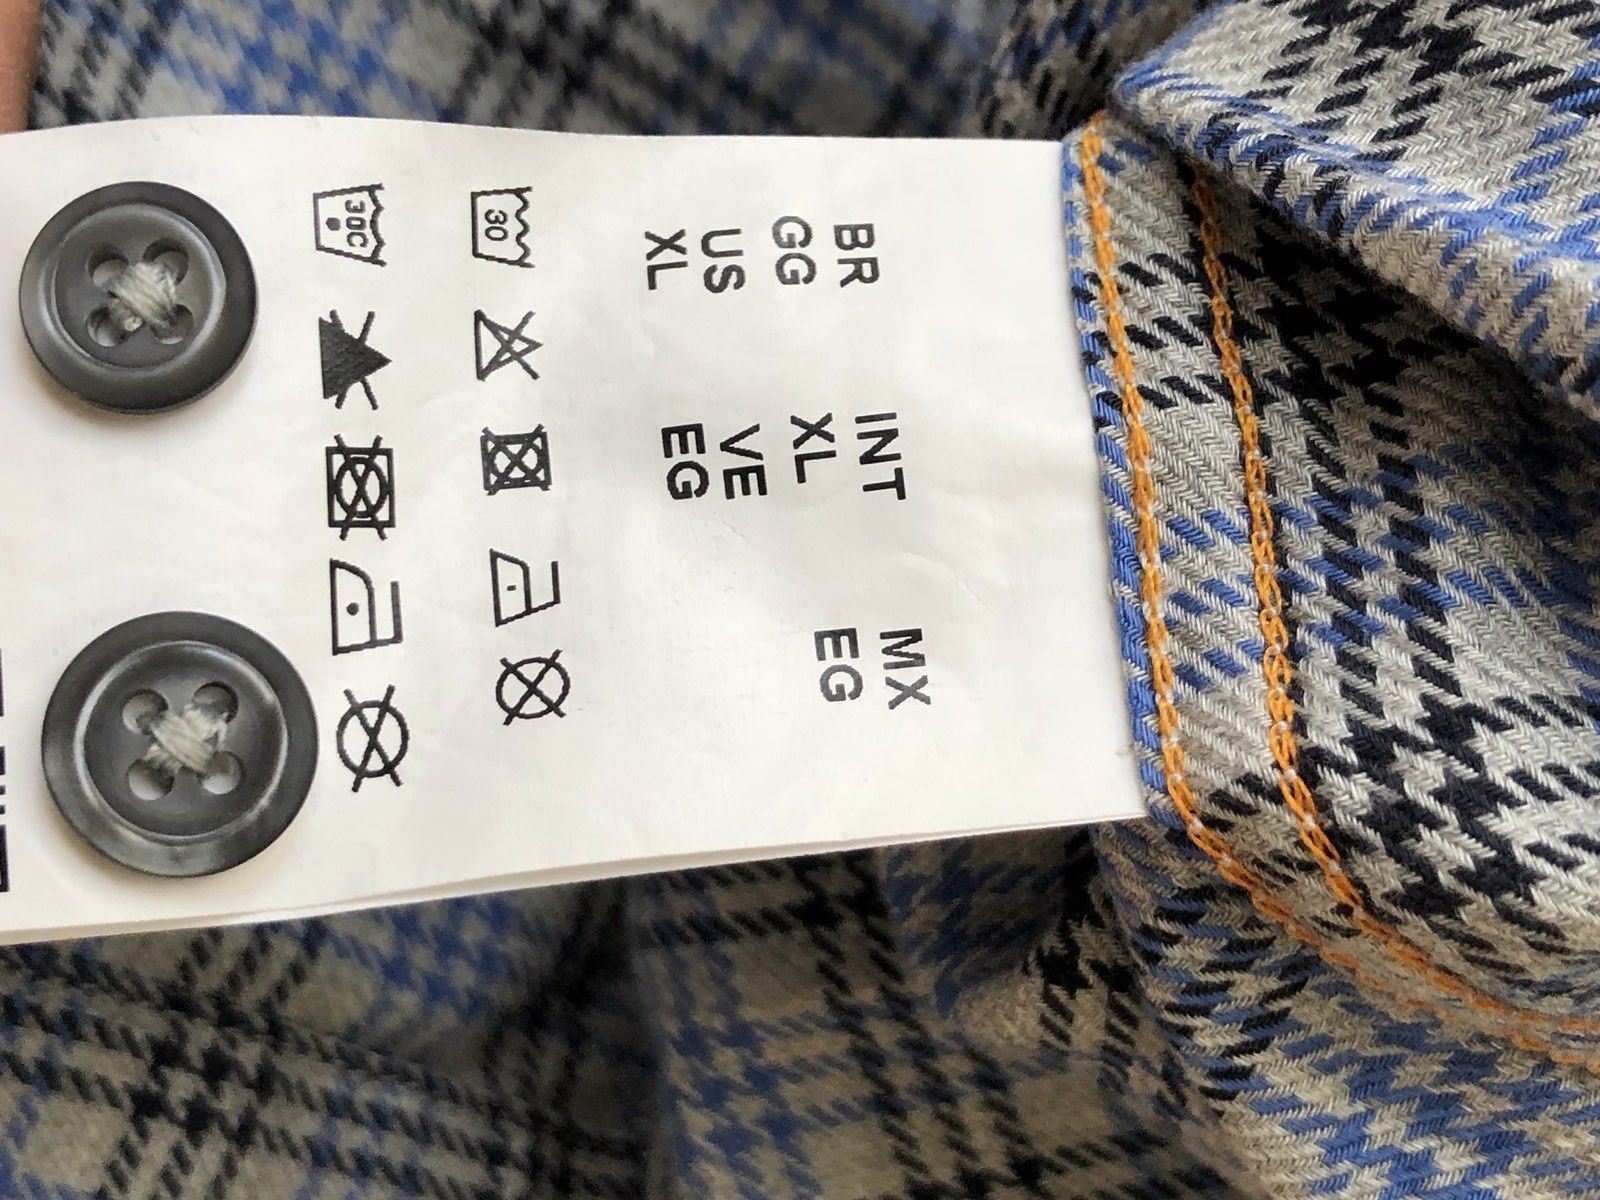 NWT $135 BOSS Hugo Boss Mens CieloebuE Dress Shirt XL - BAYSUPERSTORE